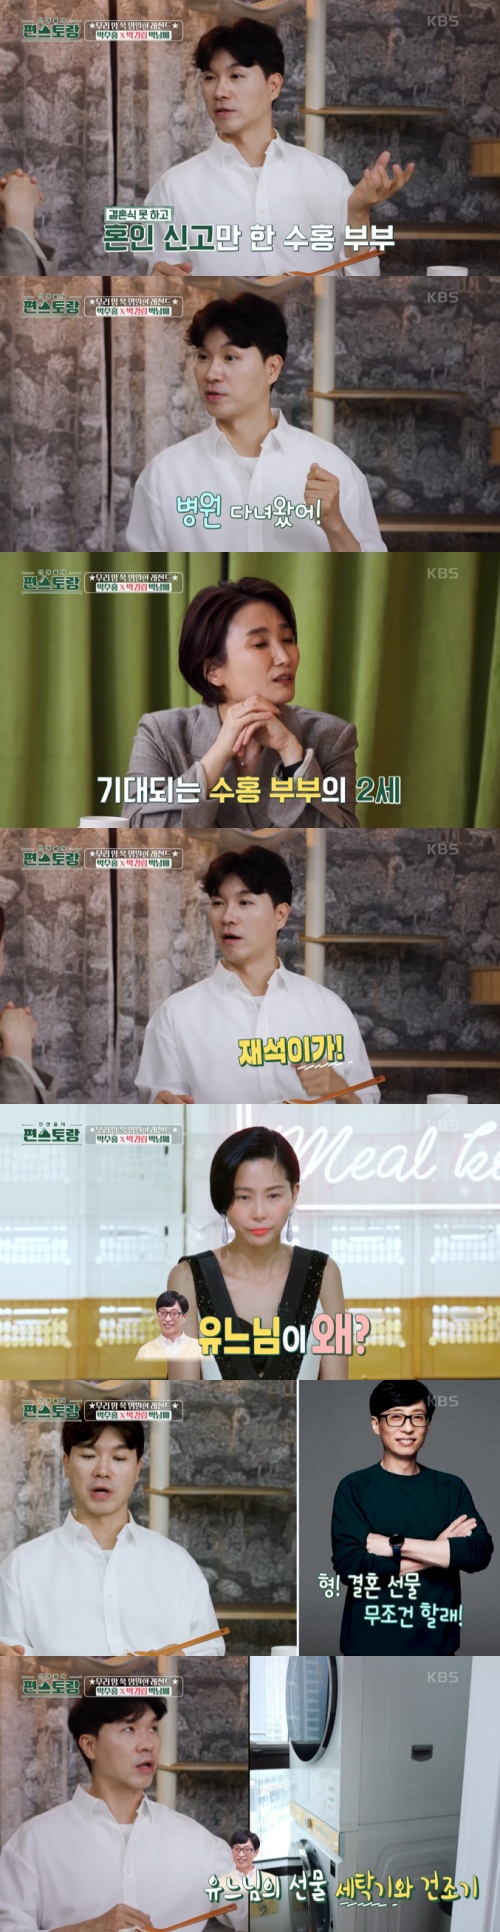 /사진=KBS2 예능프로그램 '신상출시 편스토랑'(이하 '편스토랑') 방송 화면 캡쳐